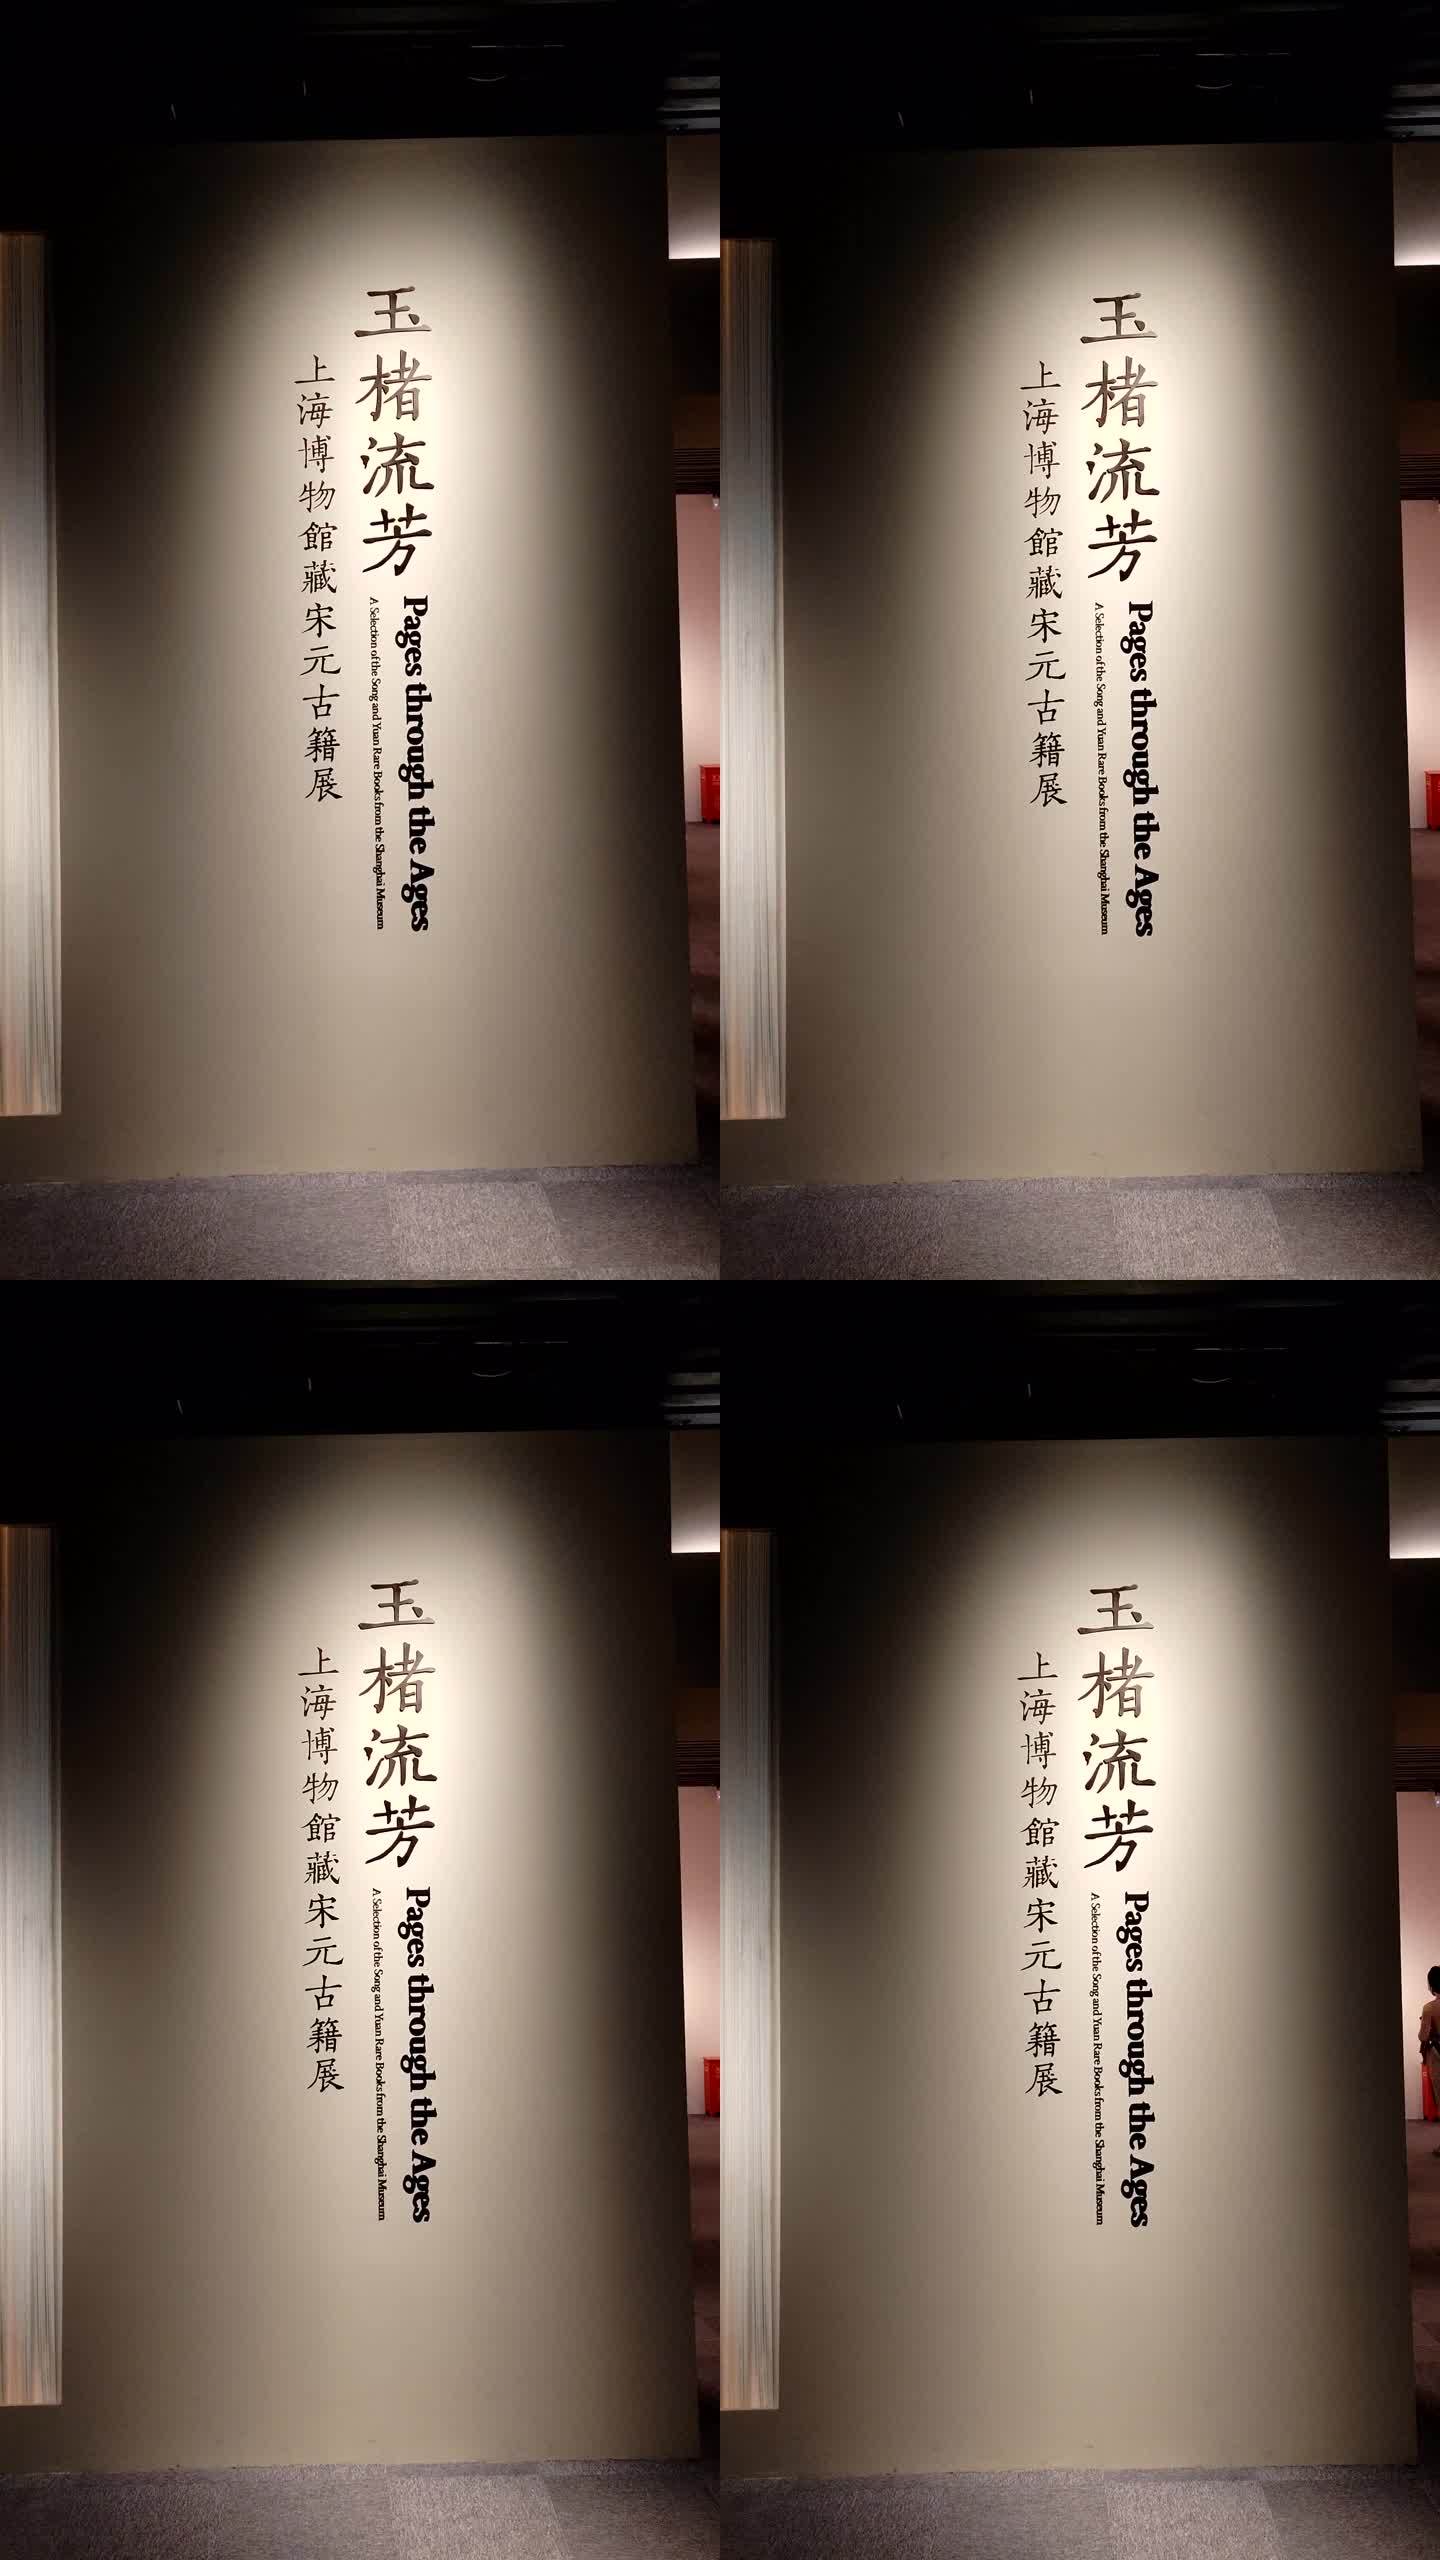 上海博物馆宋元古籍展览参观实拍